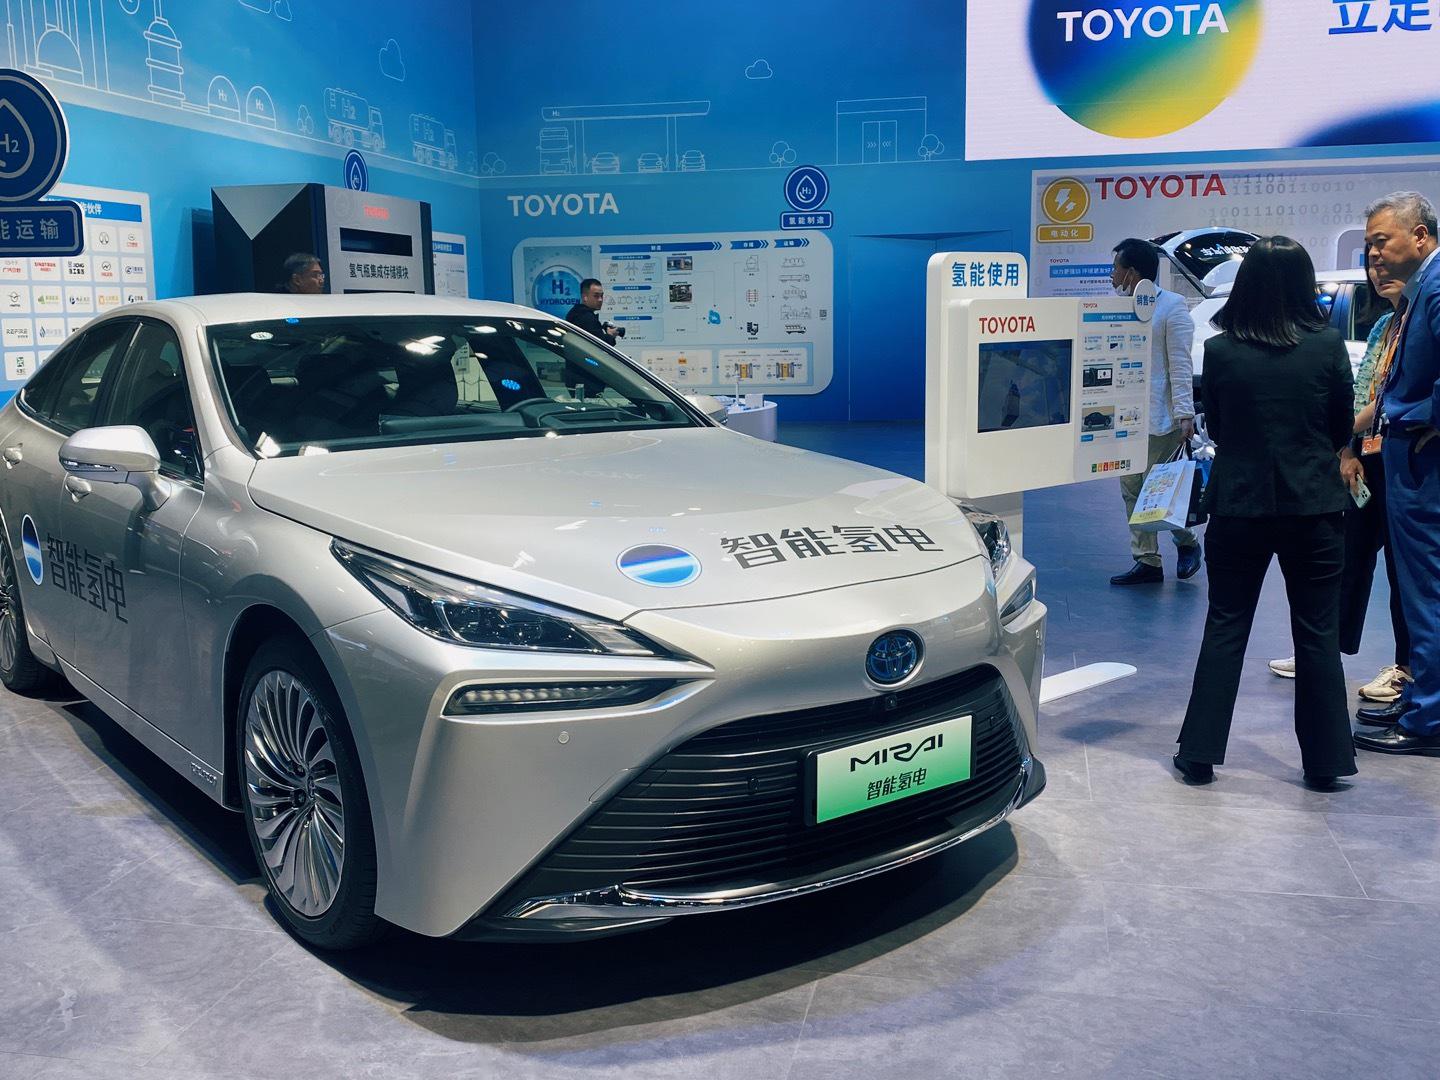 2014年,丰田推出了全球首款量产氢燃料电池车型mirai,全球用户首次